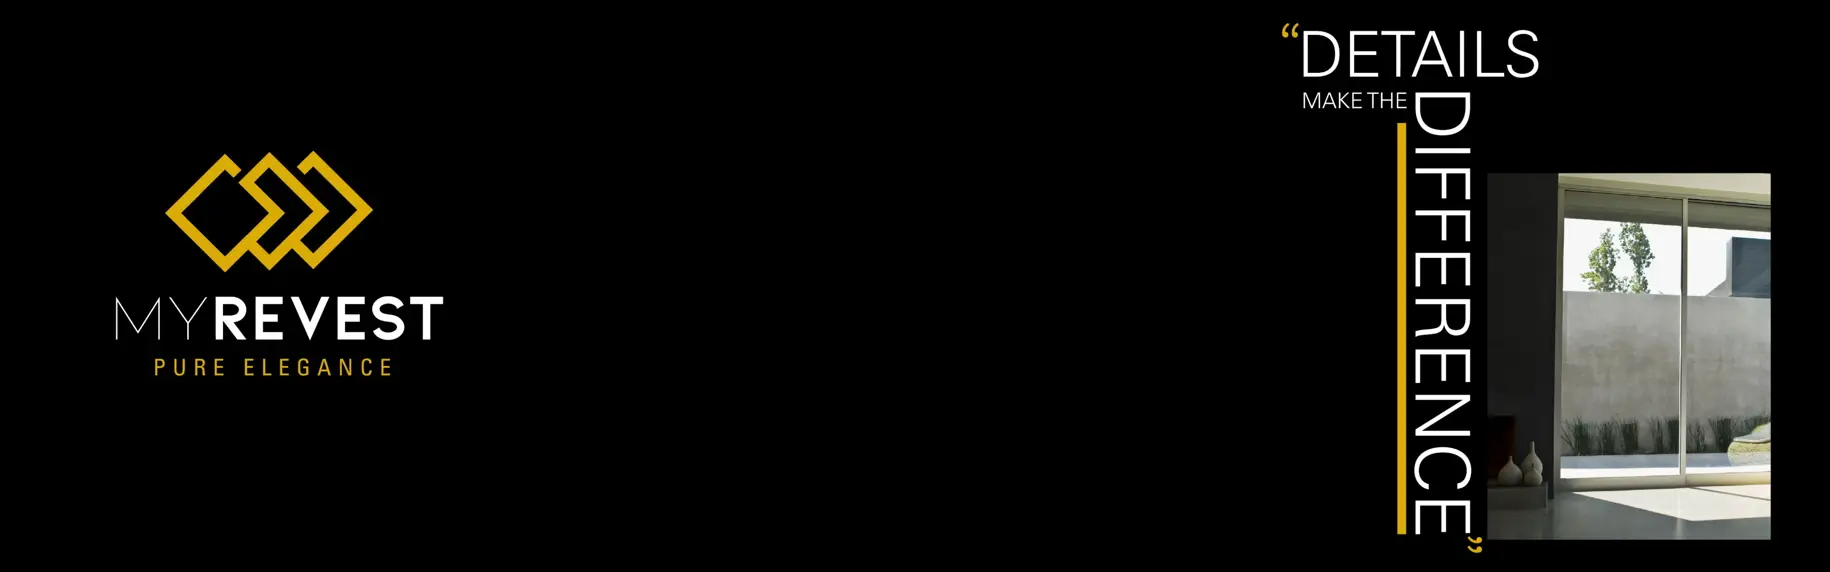 Покрытие пола из микроцемента с применением воска My Wax Plus и слева логотип MyRevest